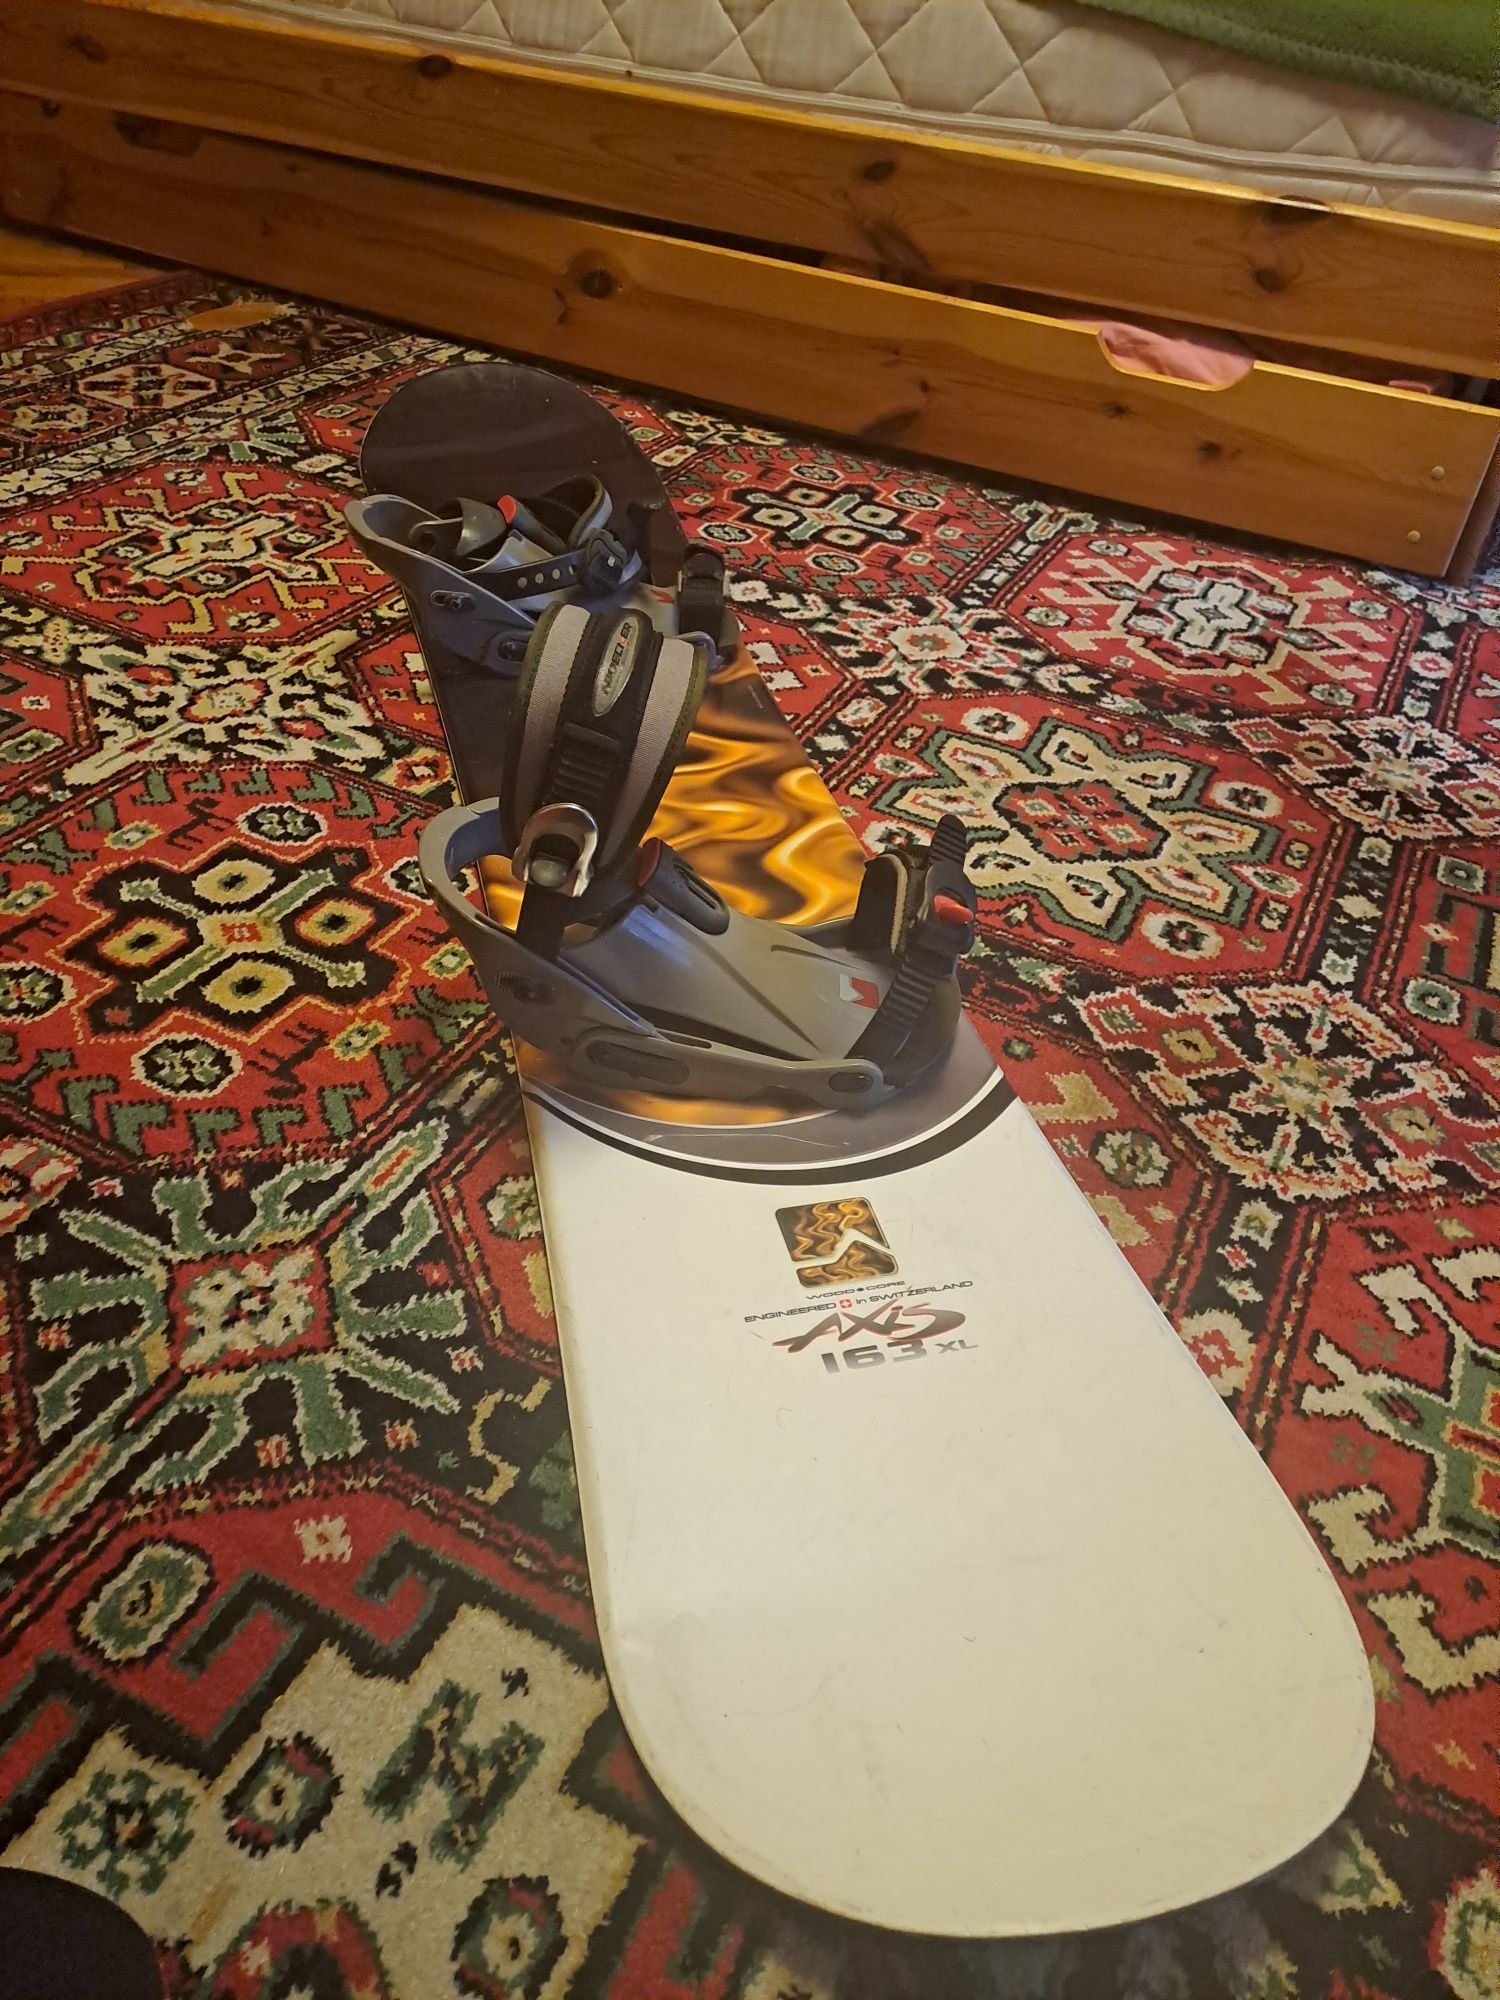 Komplet: deska snowboardowa Nidecker Axis, wiązania, buty, pokrowiec